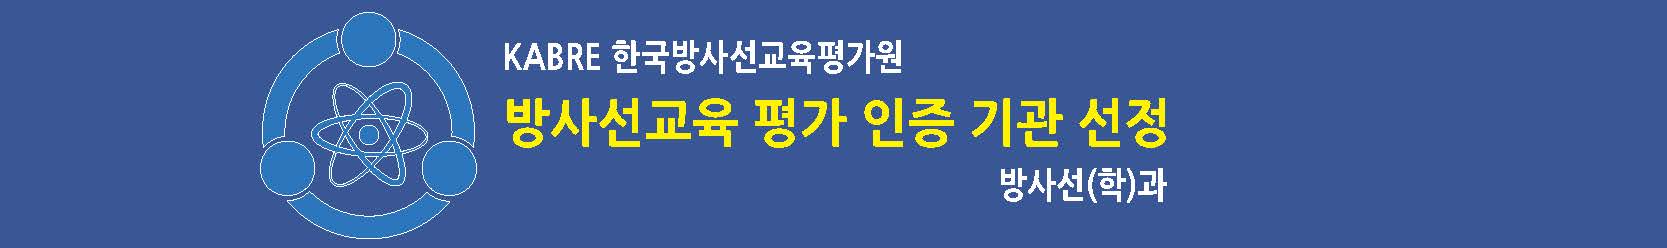 KABRE 한국방사선교육평가원 방사선교육 평가 인증 기관 선정 방사선(학)과